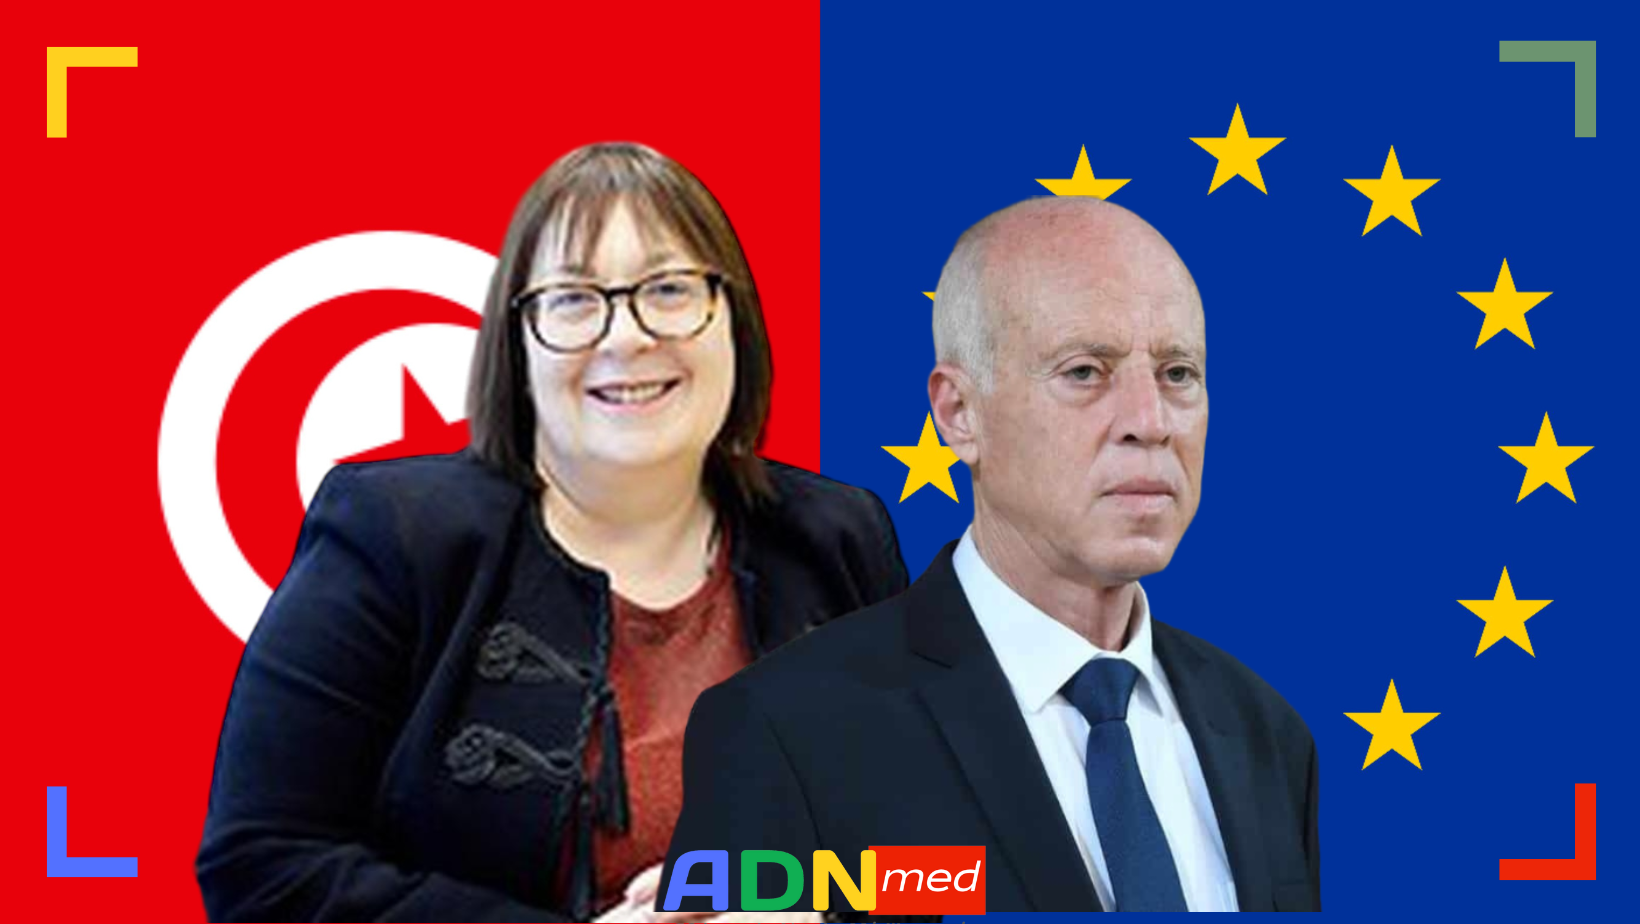 TUNISIE: KAIS SAIED ORDONNE L’EXPULSION DE LA RESPONSABLE DU SYNDICALISME DE L’UE.